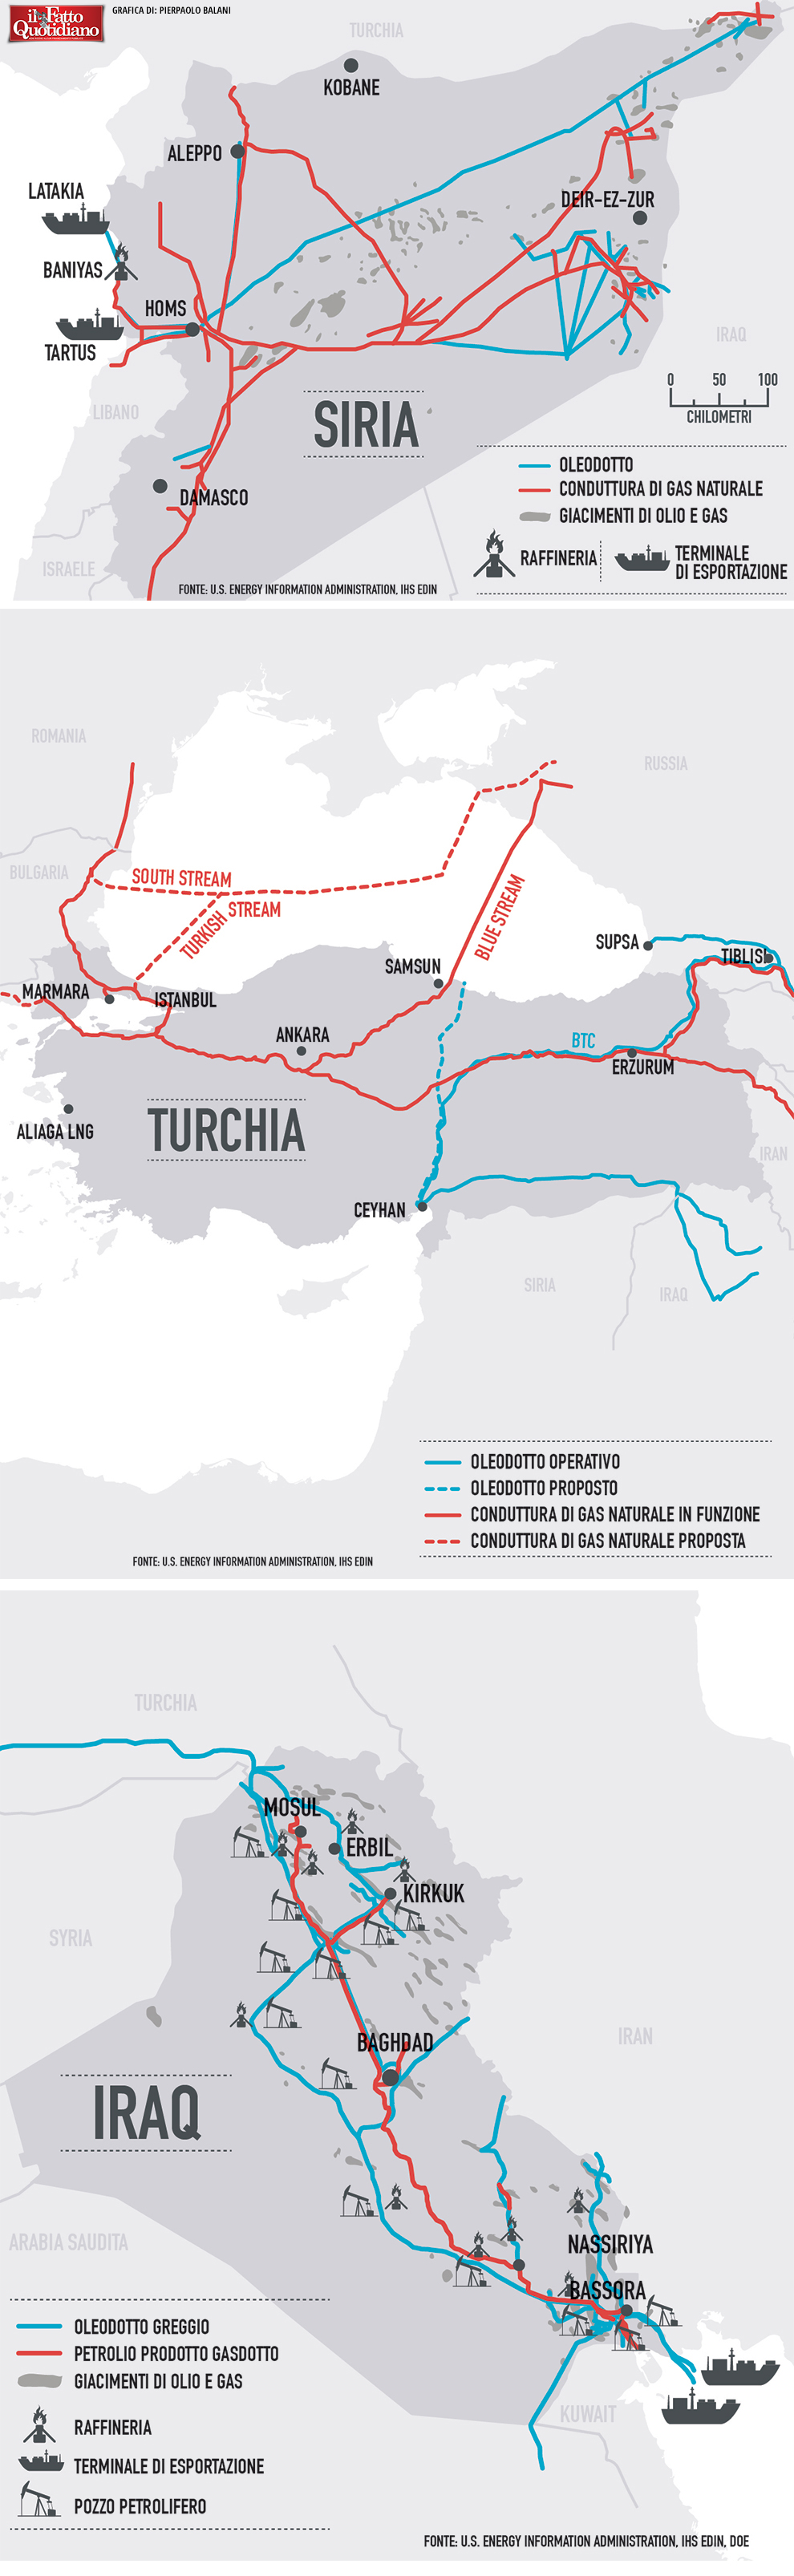 015-infografica-ilfattoquotidiano-syria-turchia-iraq-isis